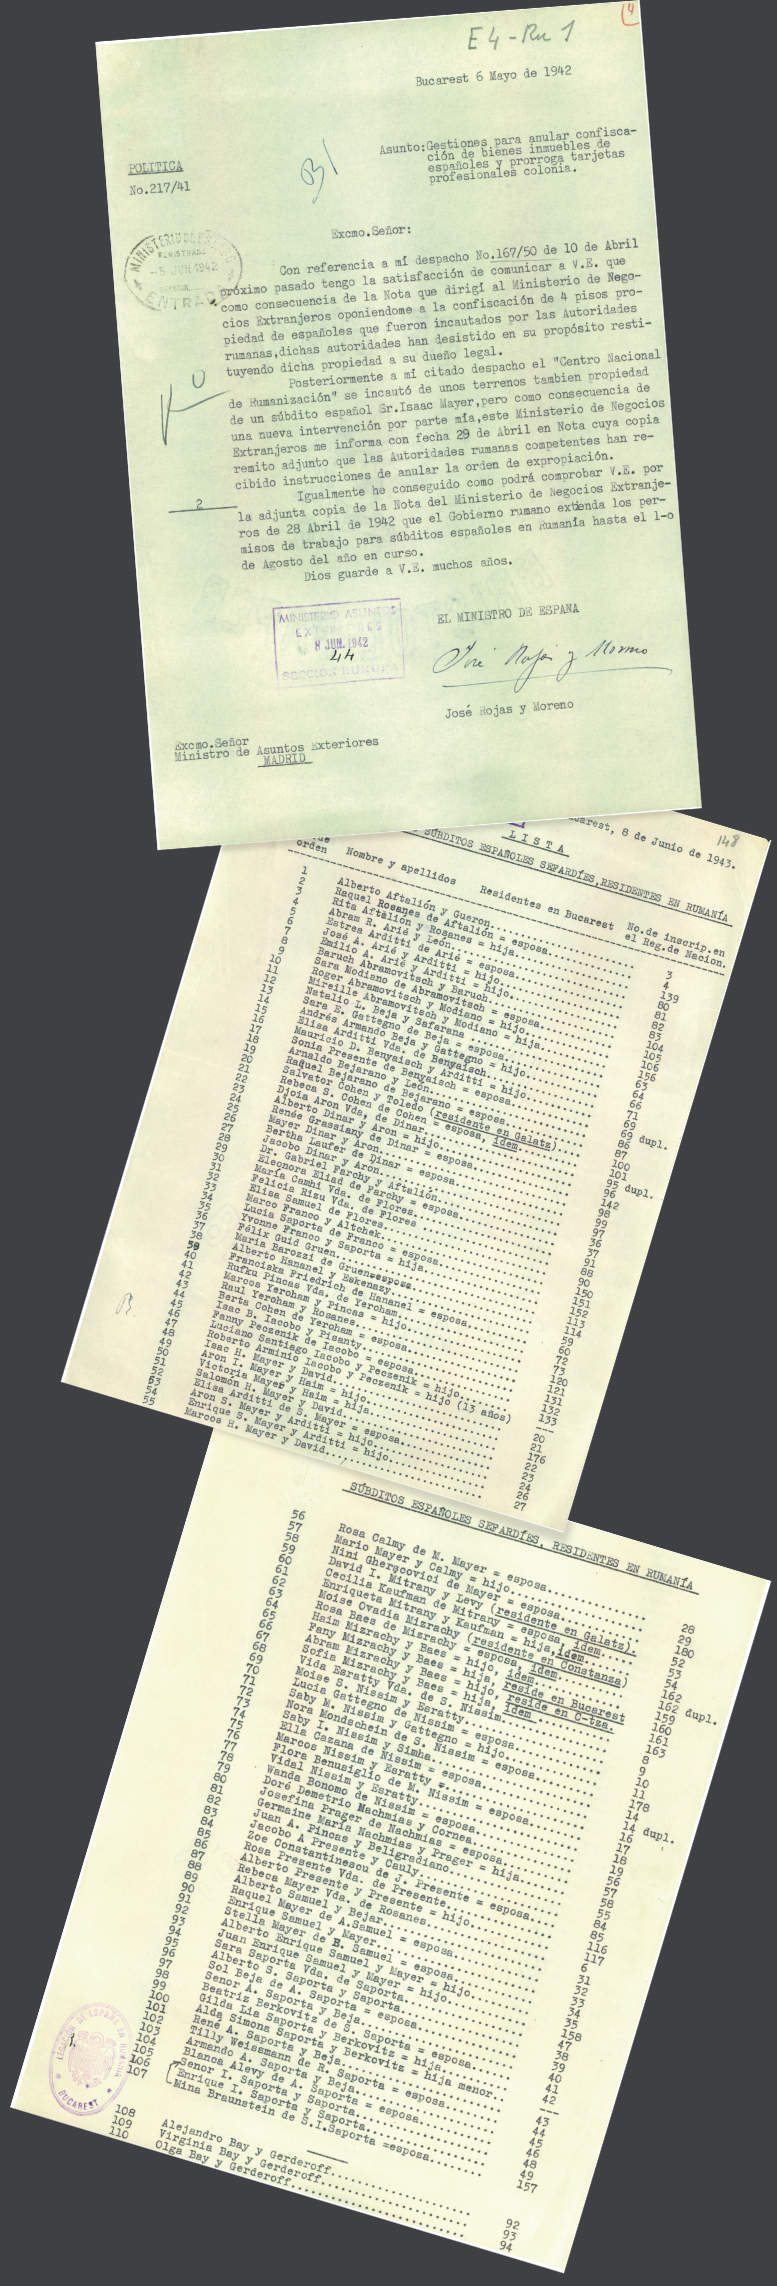 Ziņojums 1942. gada 6. maijā, kas vēsta par darbībām, kuras Kasa Rohass bija veicis, lai atceltu spāņiem piederošo nekustamo īpašumu konfiskāciju. Lejā – saraksts ar 110 Rumānijā dzīvojošiem Spānijas sefardu subjektiem, kuriem Kasa Rohass izgādāja evakuācijas atļaujas (1943. gada 8. jūnijs).